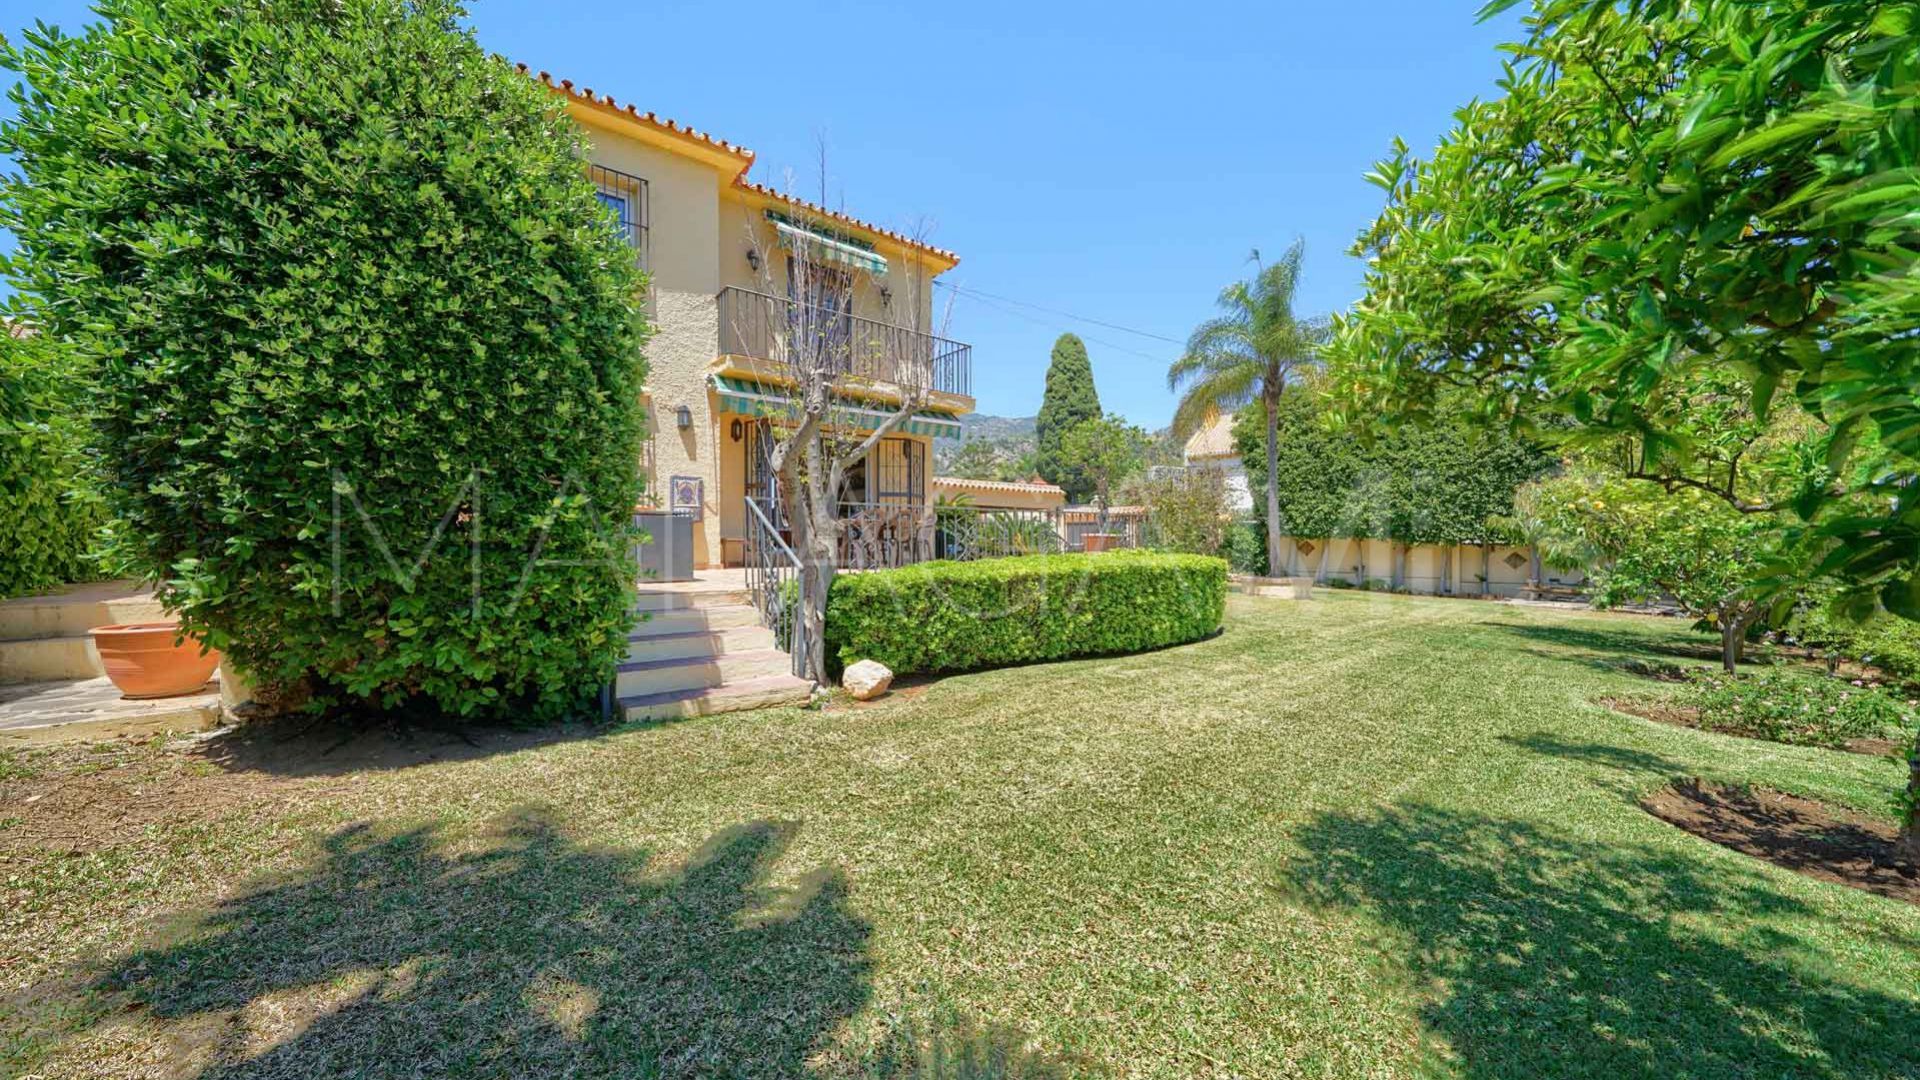 Villa for sale in El Mirador with 3 bedrooms